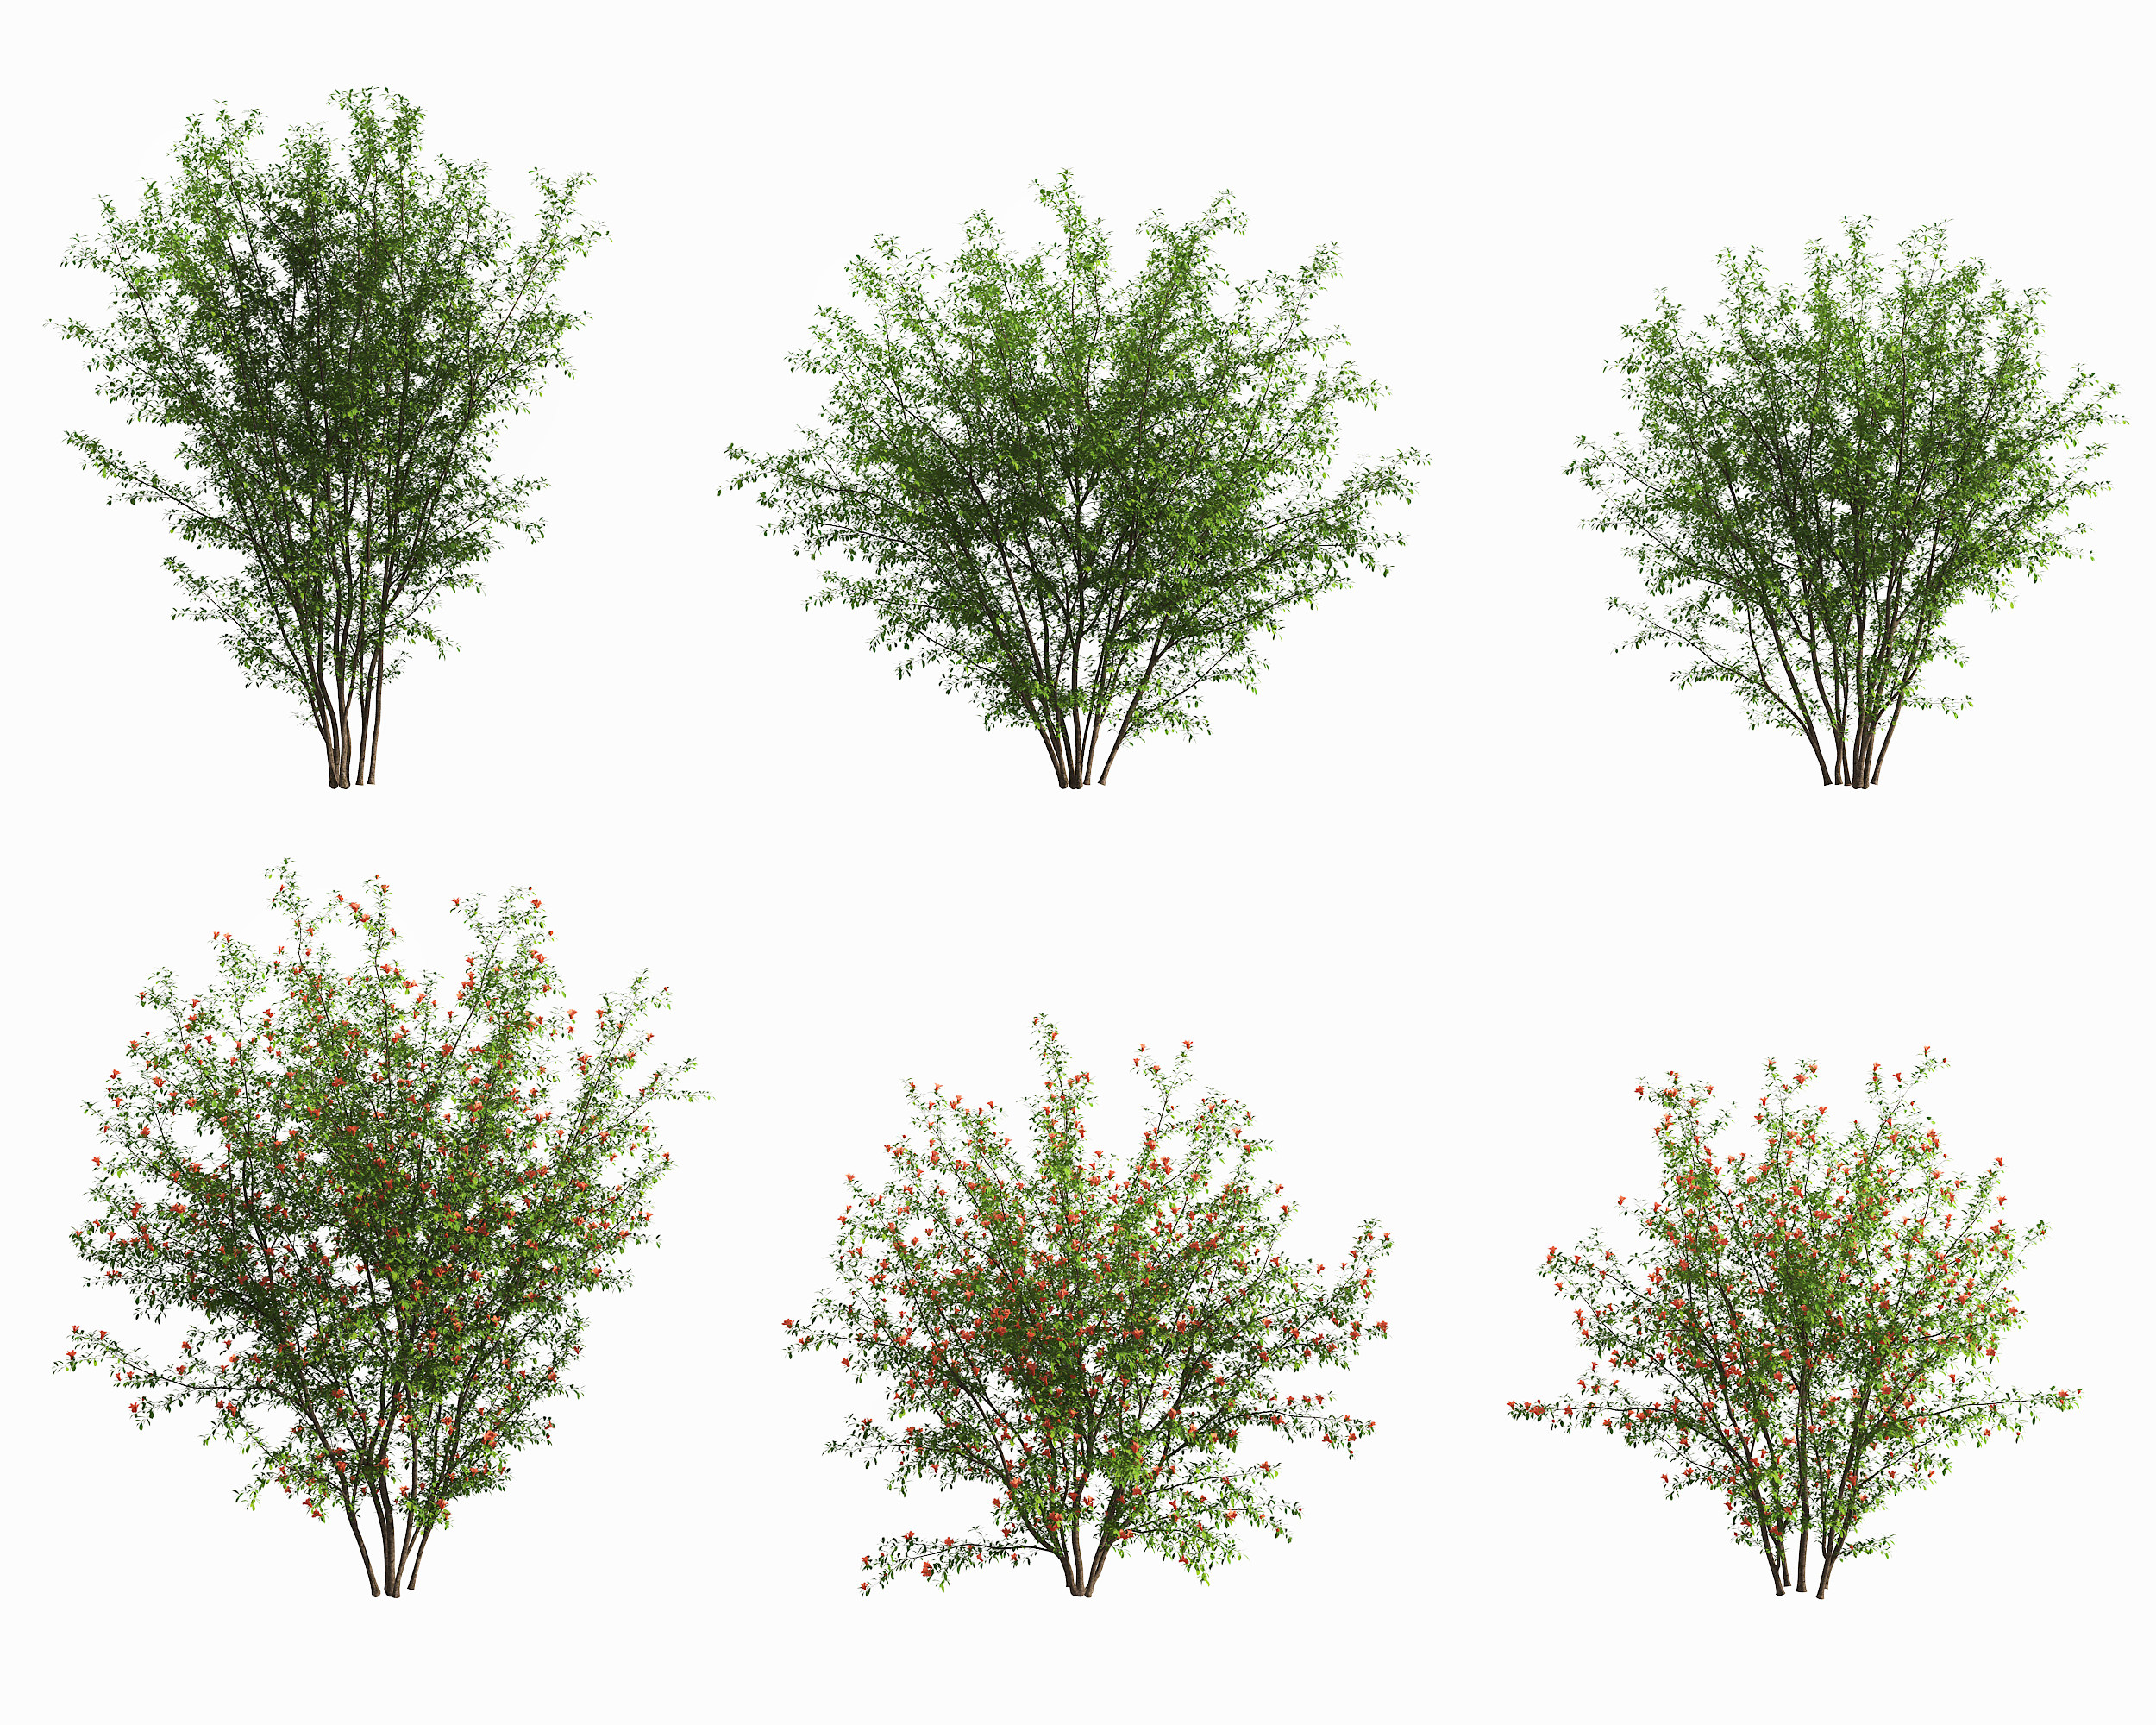 现代景观树木,3d模型下载